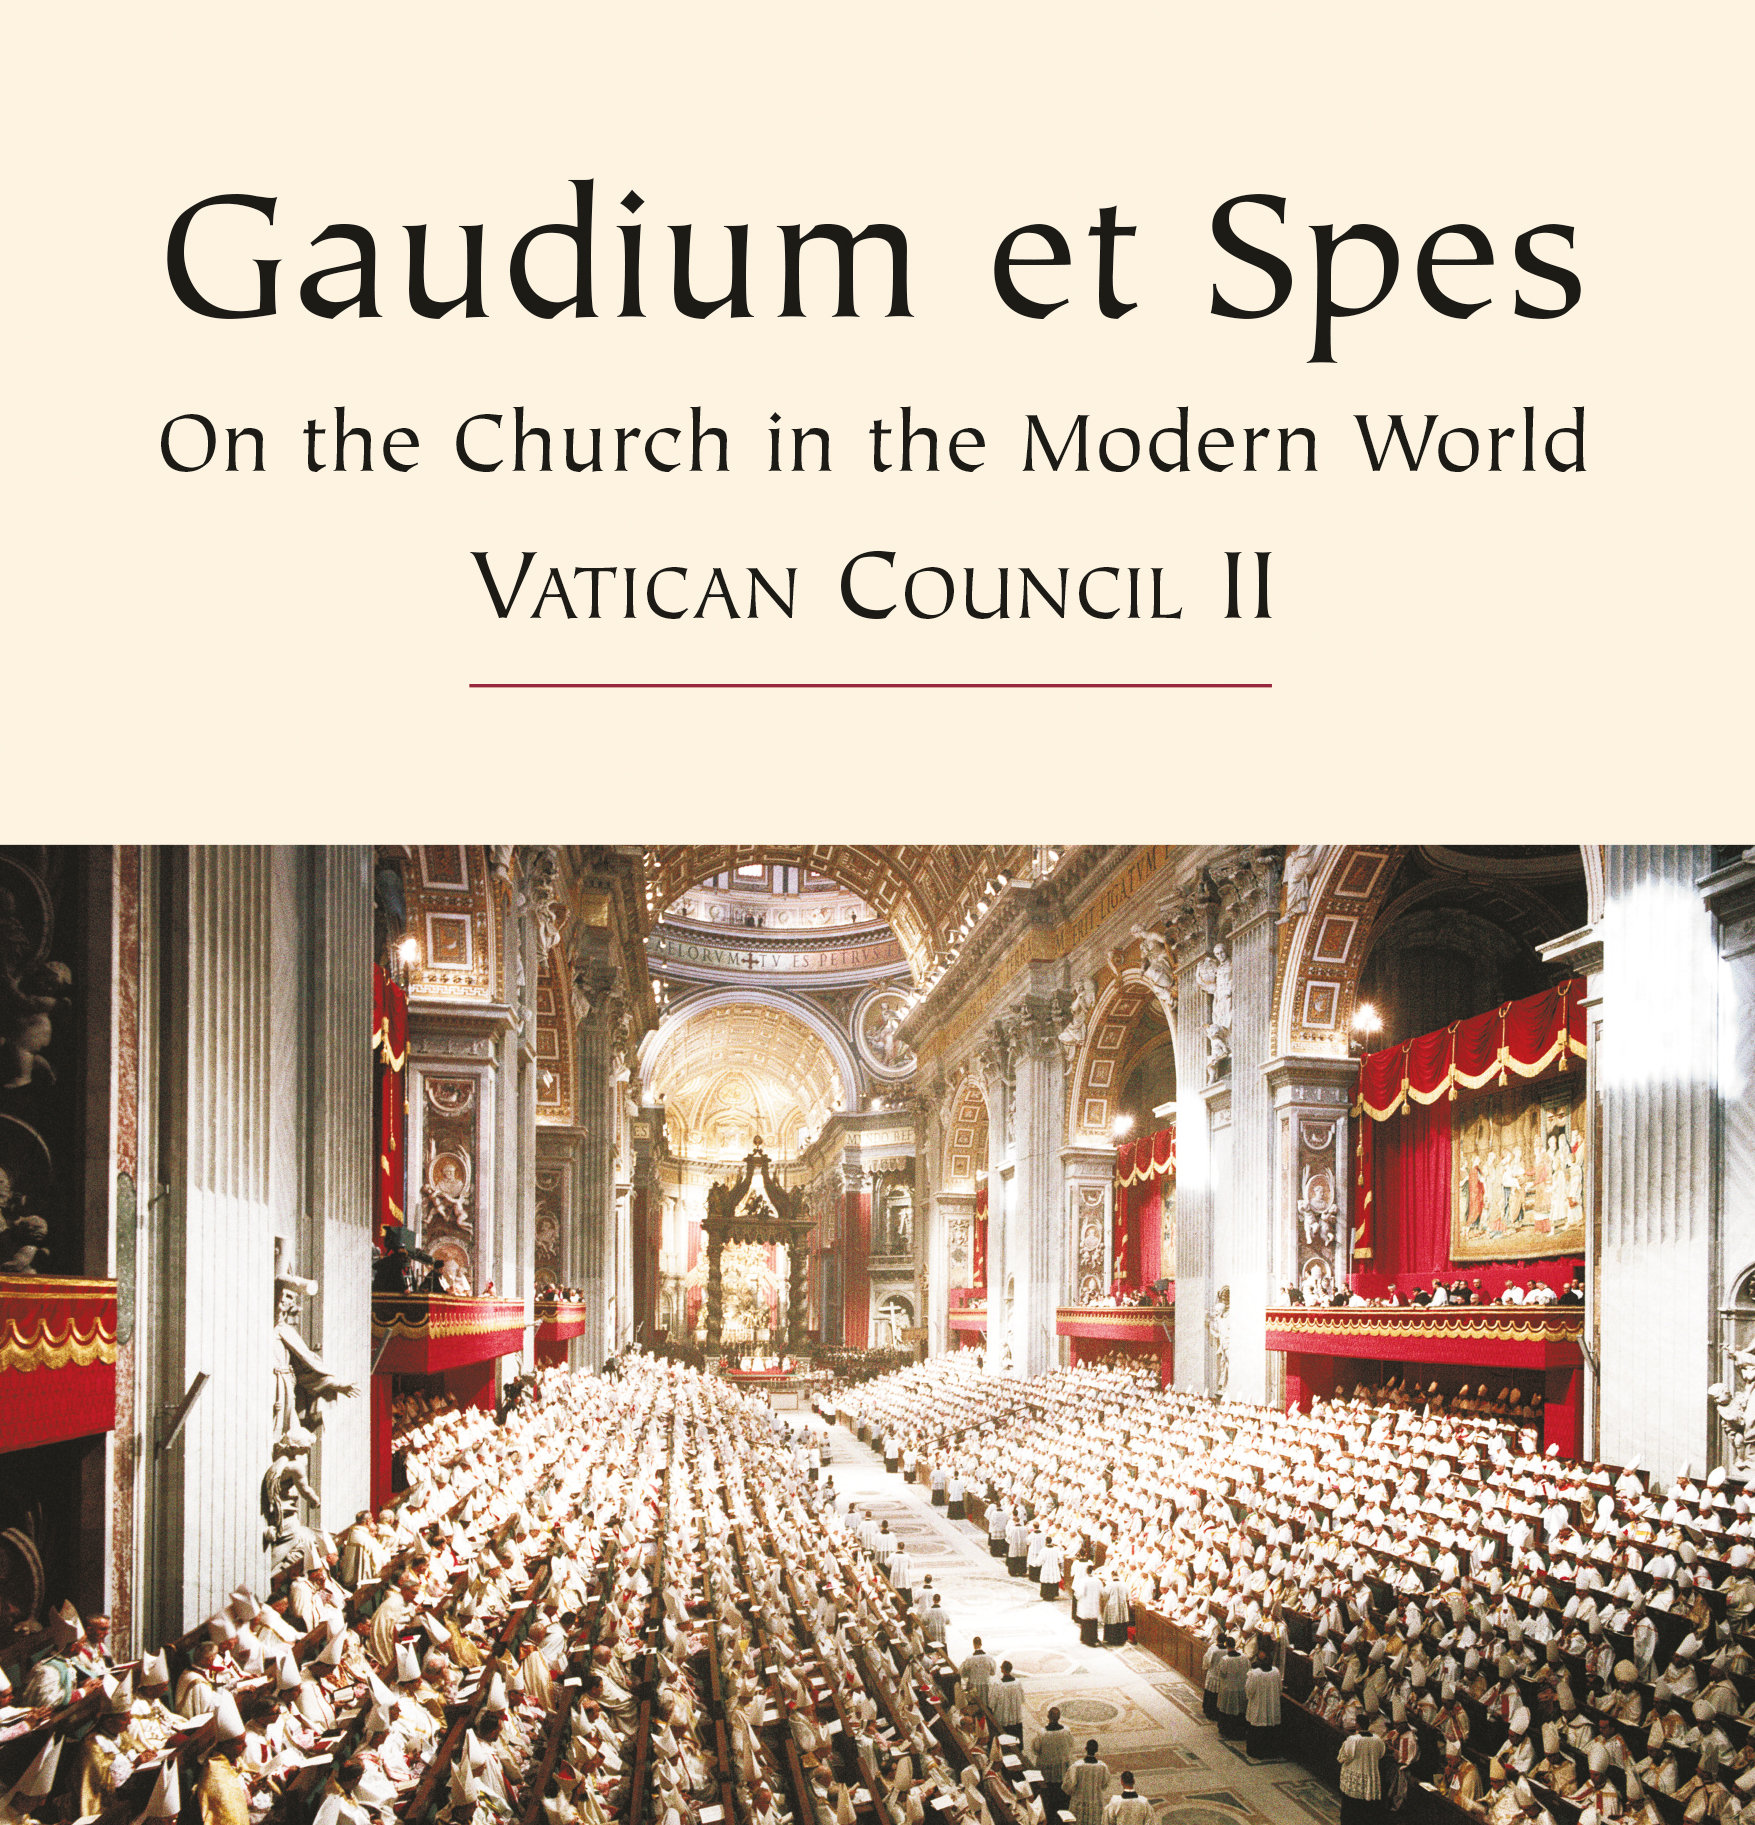 Gaudium et Spes - Summary 